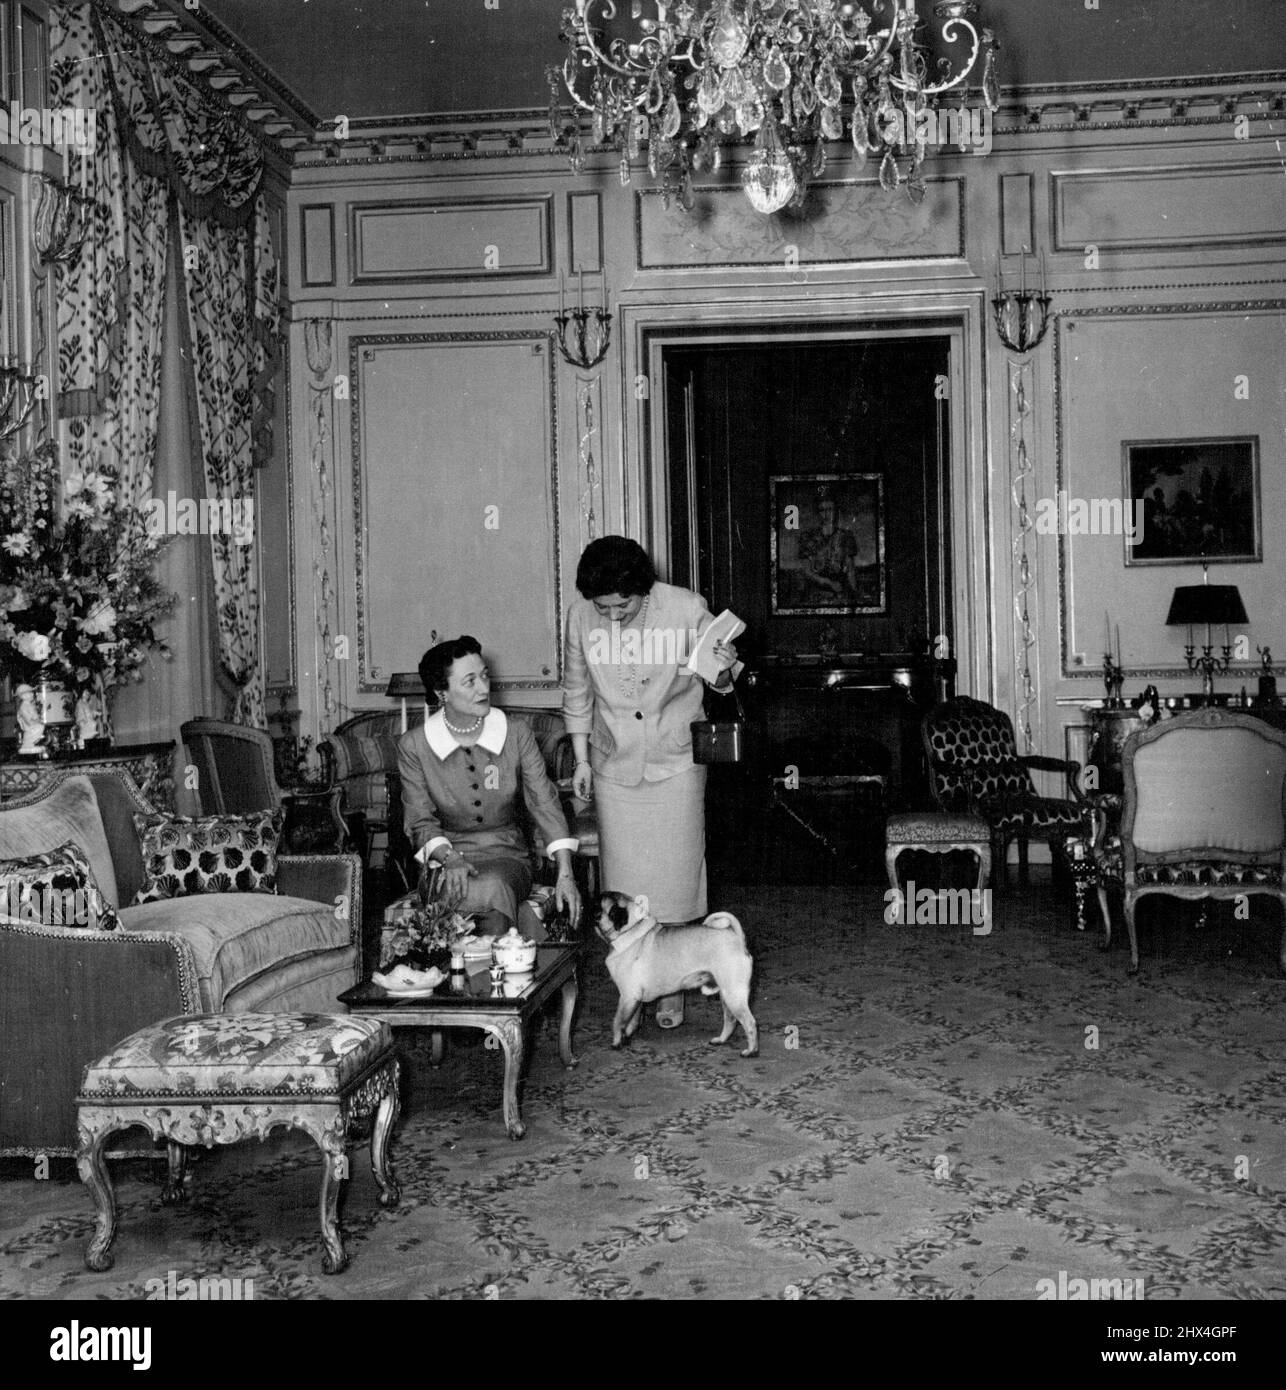 La duchesse et le chien reçoivent un visiteur dans la salle de réception gris argenté. Le tapis est un hommage au goût de l'hôtesse - Wallis bleu. 26 septembre 1955. (Photo par Daily Mirror) Banque D'Images